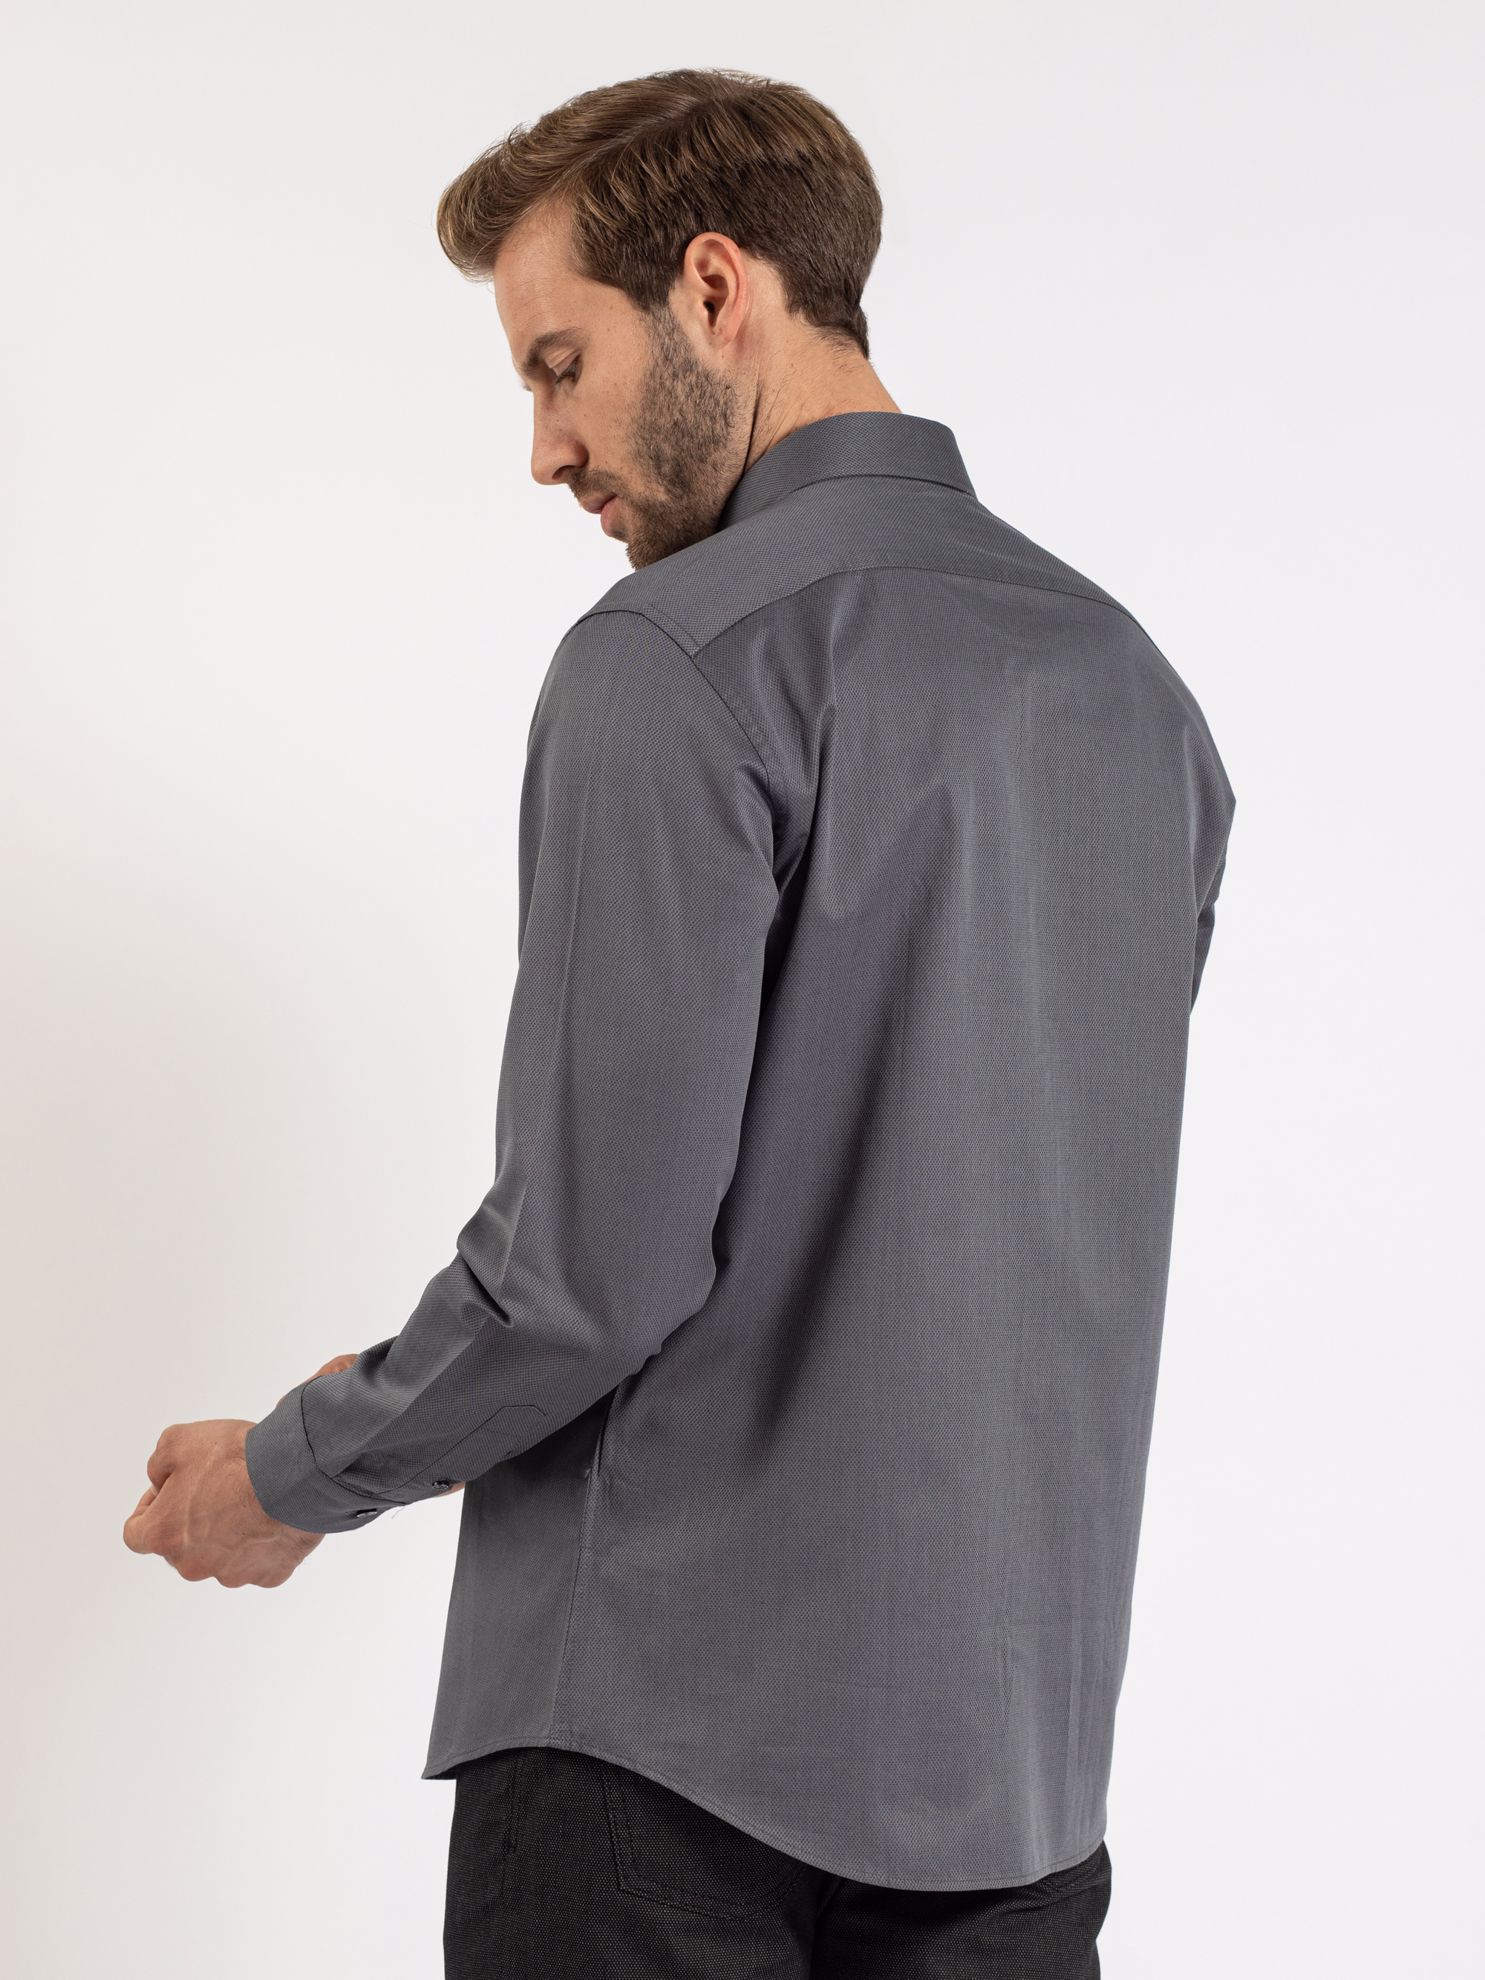 Karaca Erkek Slim Fit Gömlek-Antrasit. ürün görseli